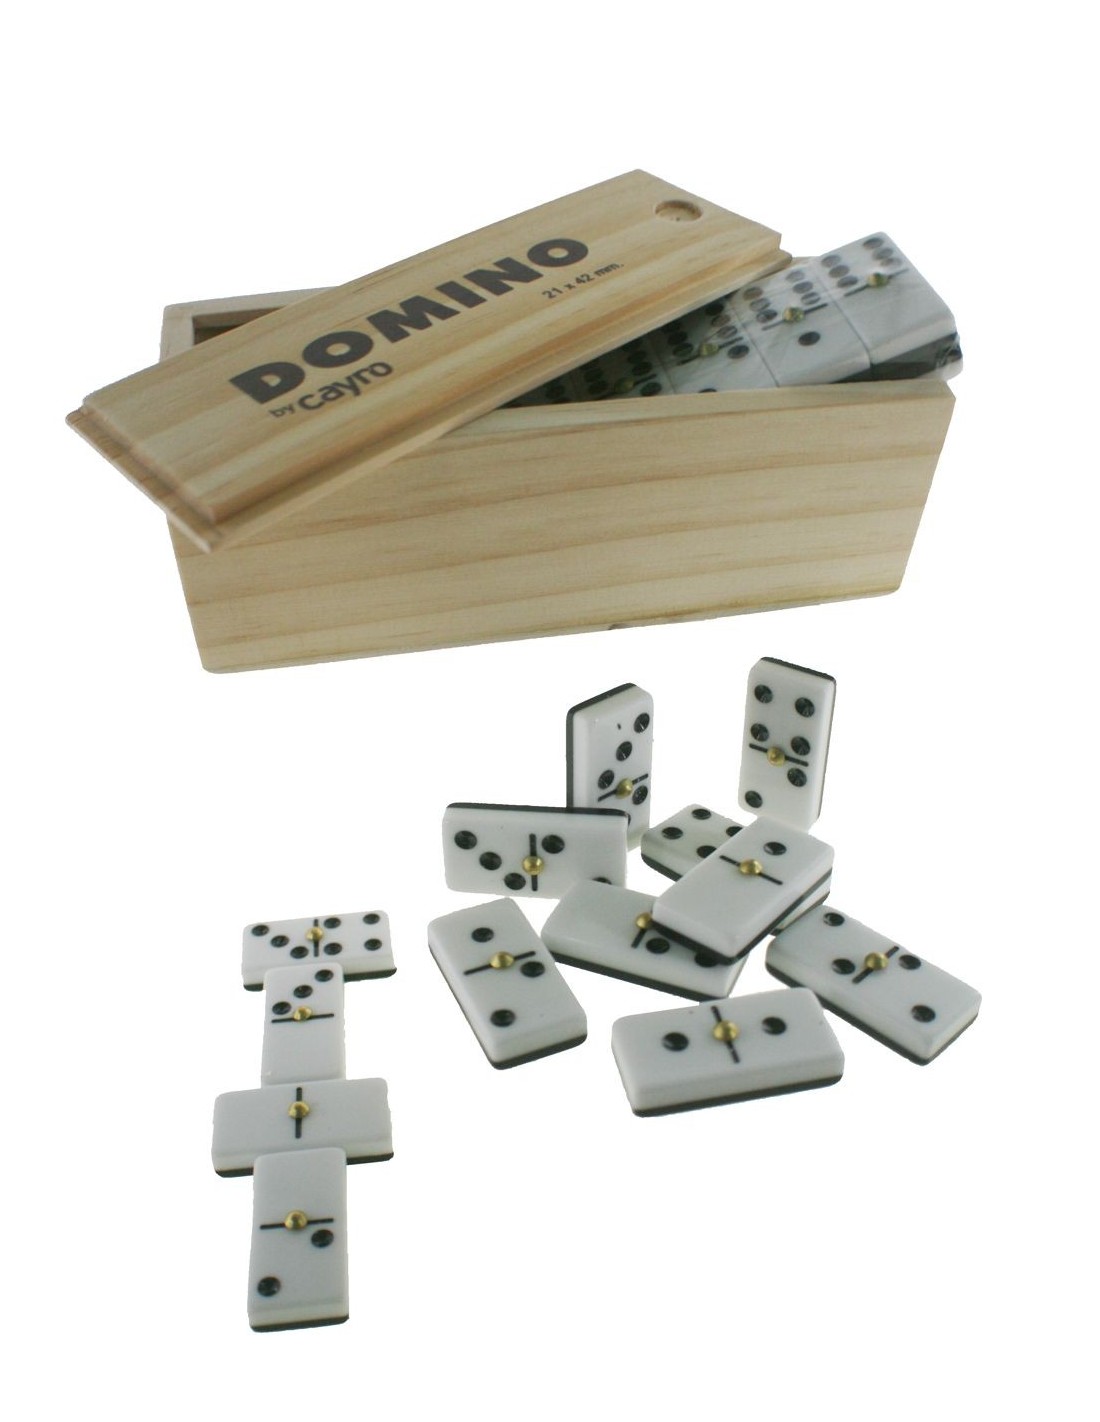 Jeu classique de dominos dans une boîte en bois pour 2 à 4 joueurs